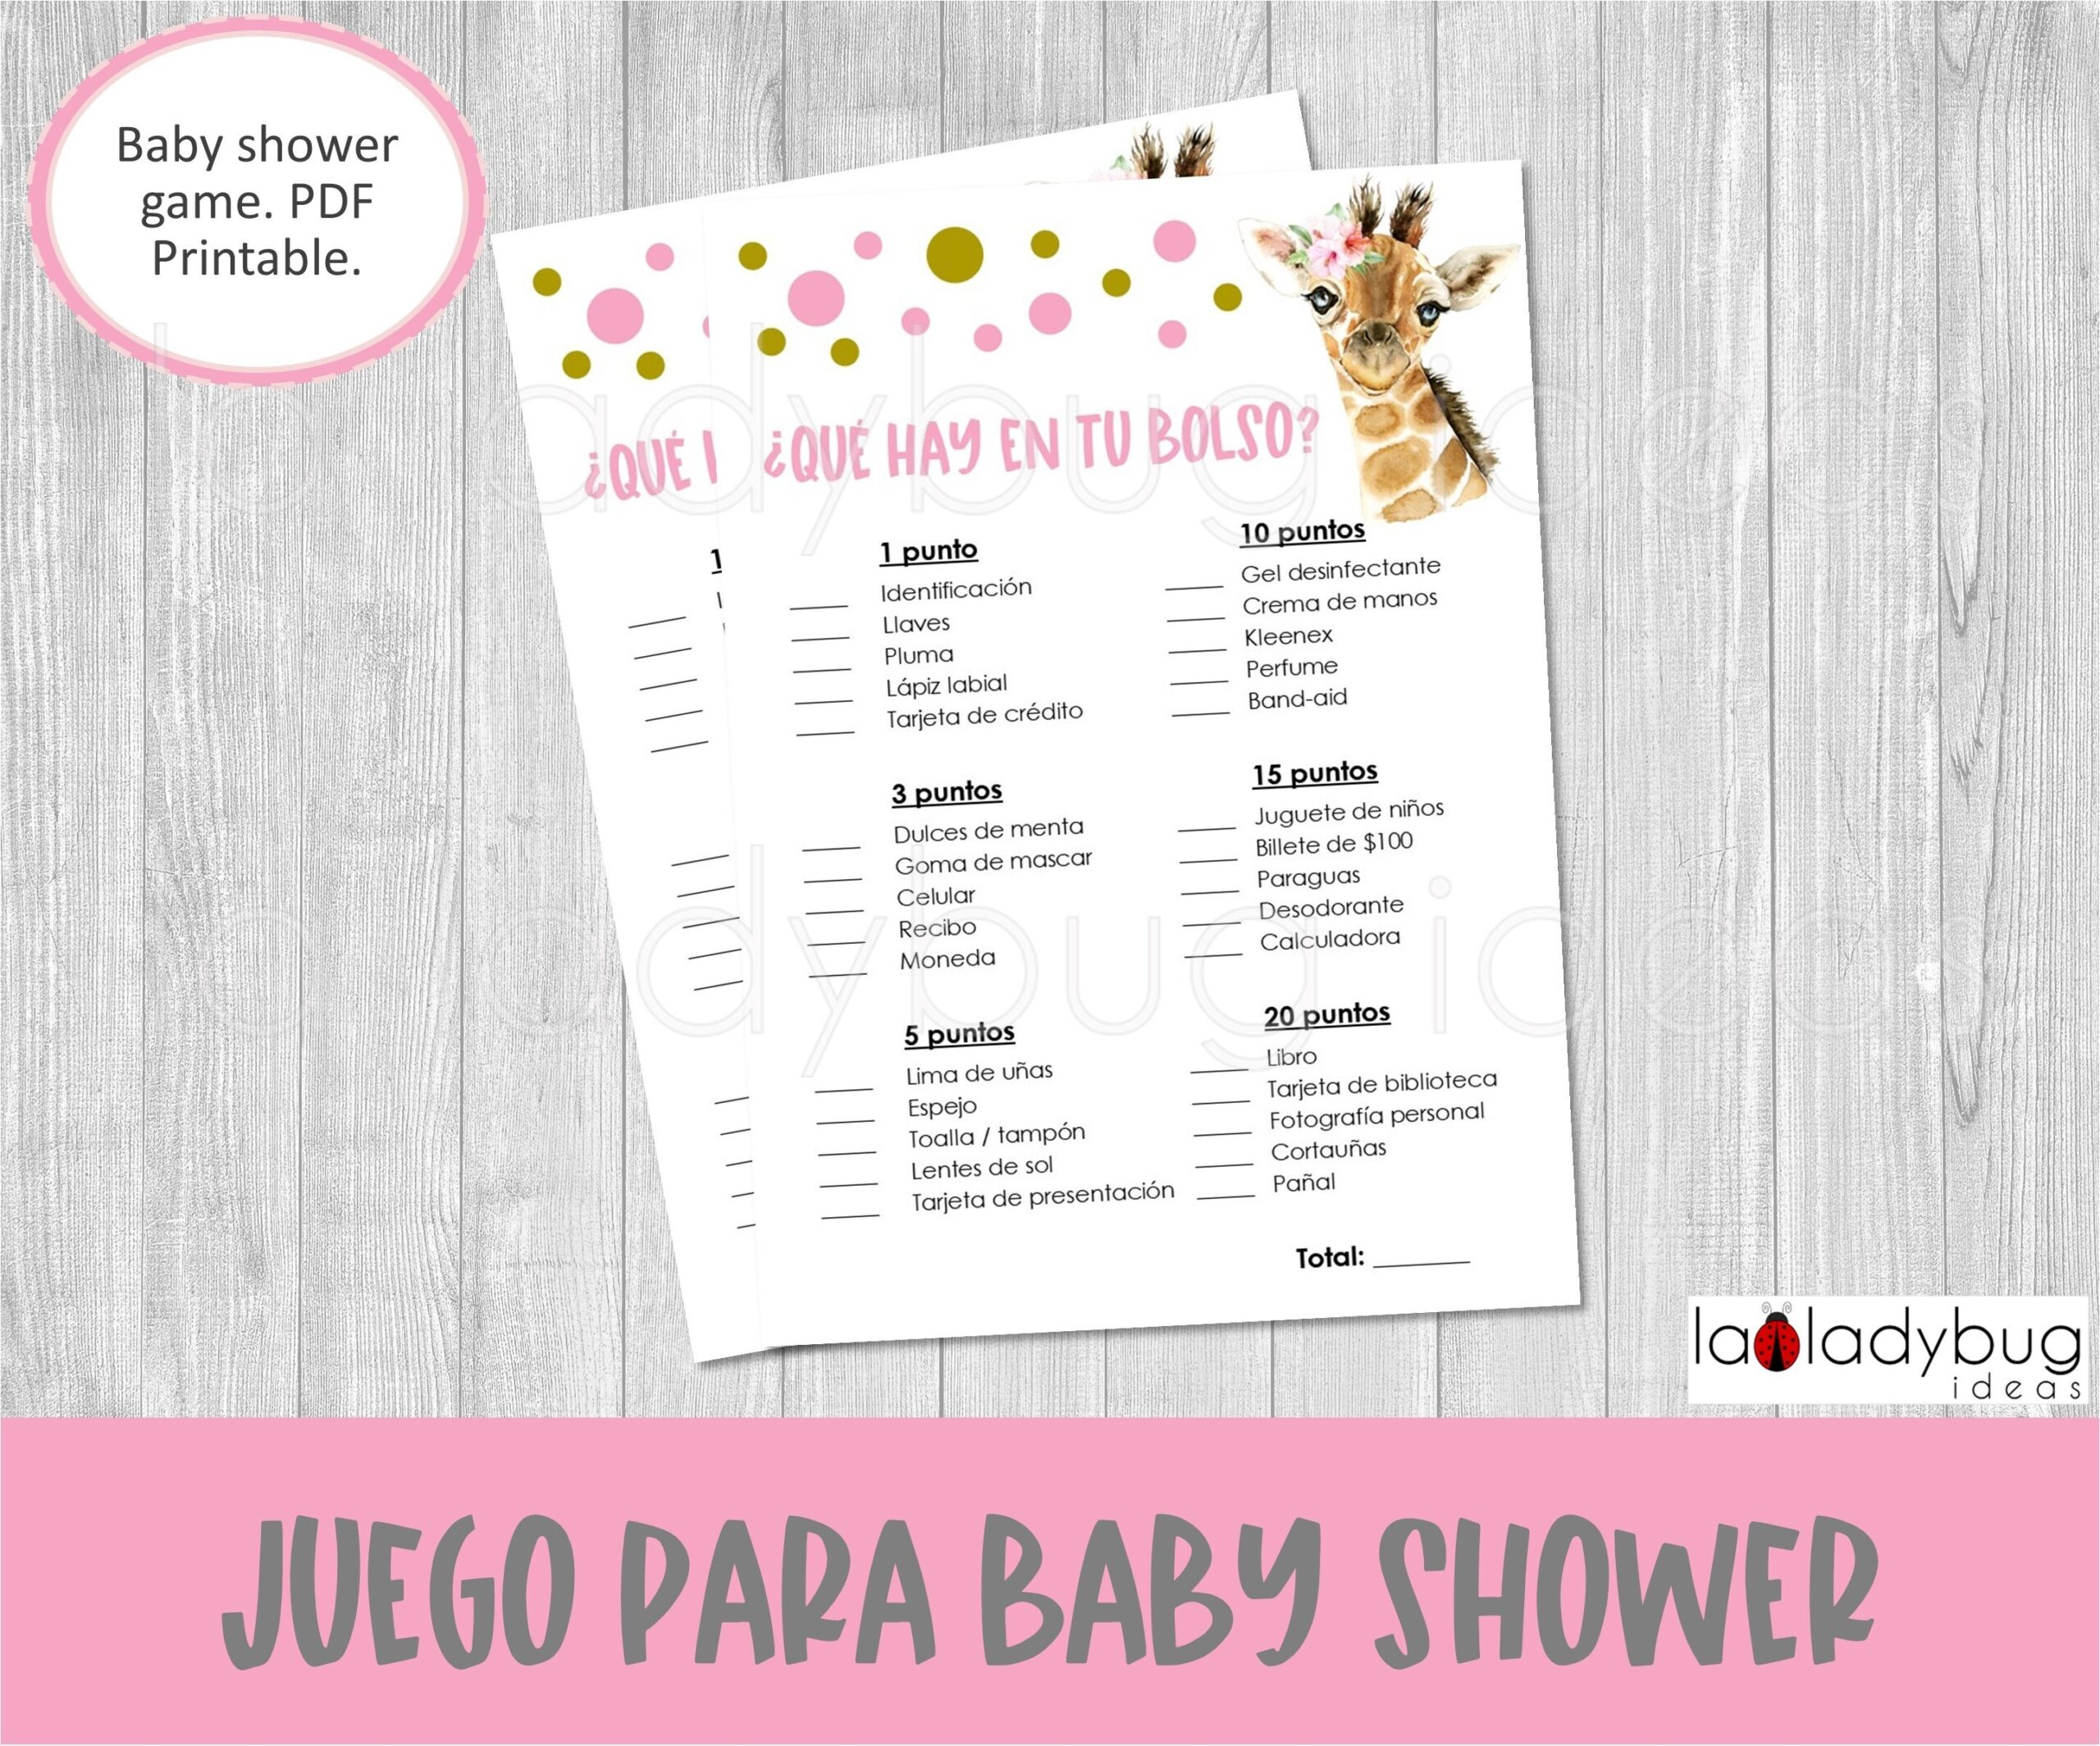 Juegos De Baby Shower Para Imprimir que Hay En Tu Bolso Descarga Inmediata Baby Shower Games In Spanish Gray And Yellow Baby Giraffe Etsy - Free Printable Baby Shower Games In Spanish